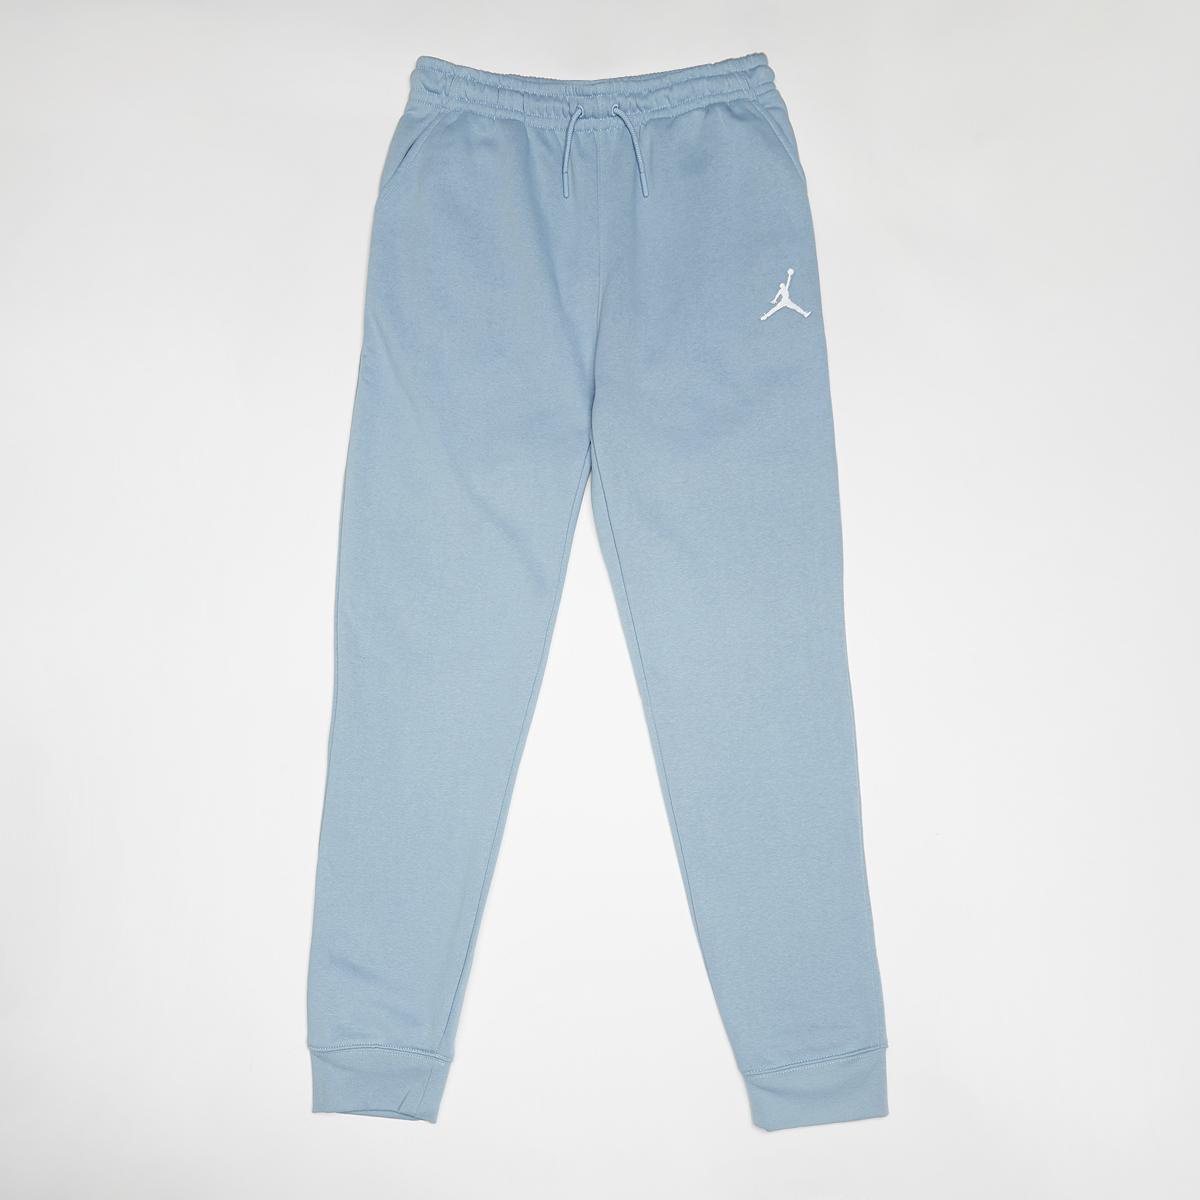 Jordan Michael Essentials Pants Trainingsbroeken Kids blue grey maat: 128 beschikbare maaten:128 147 158 170